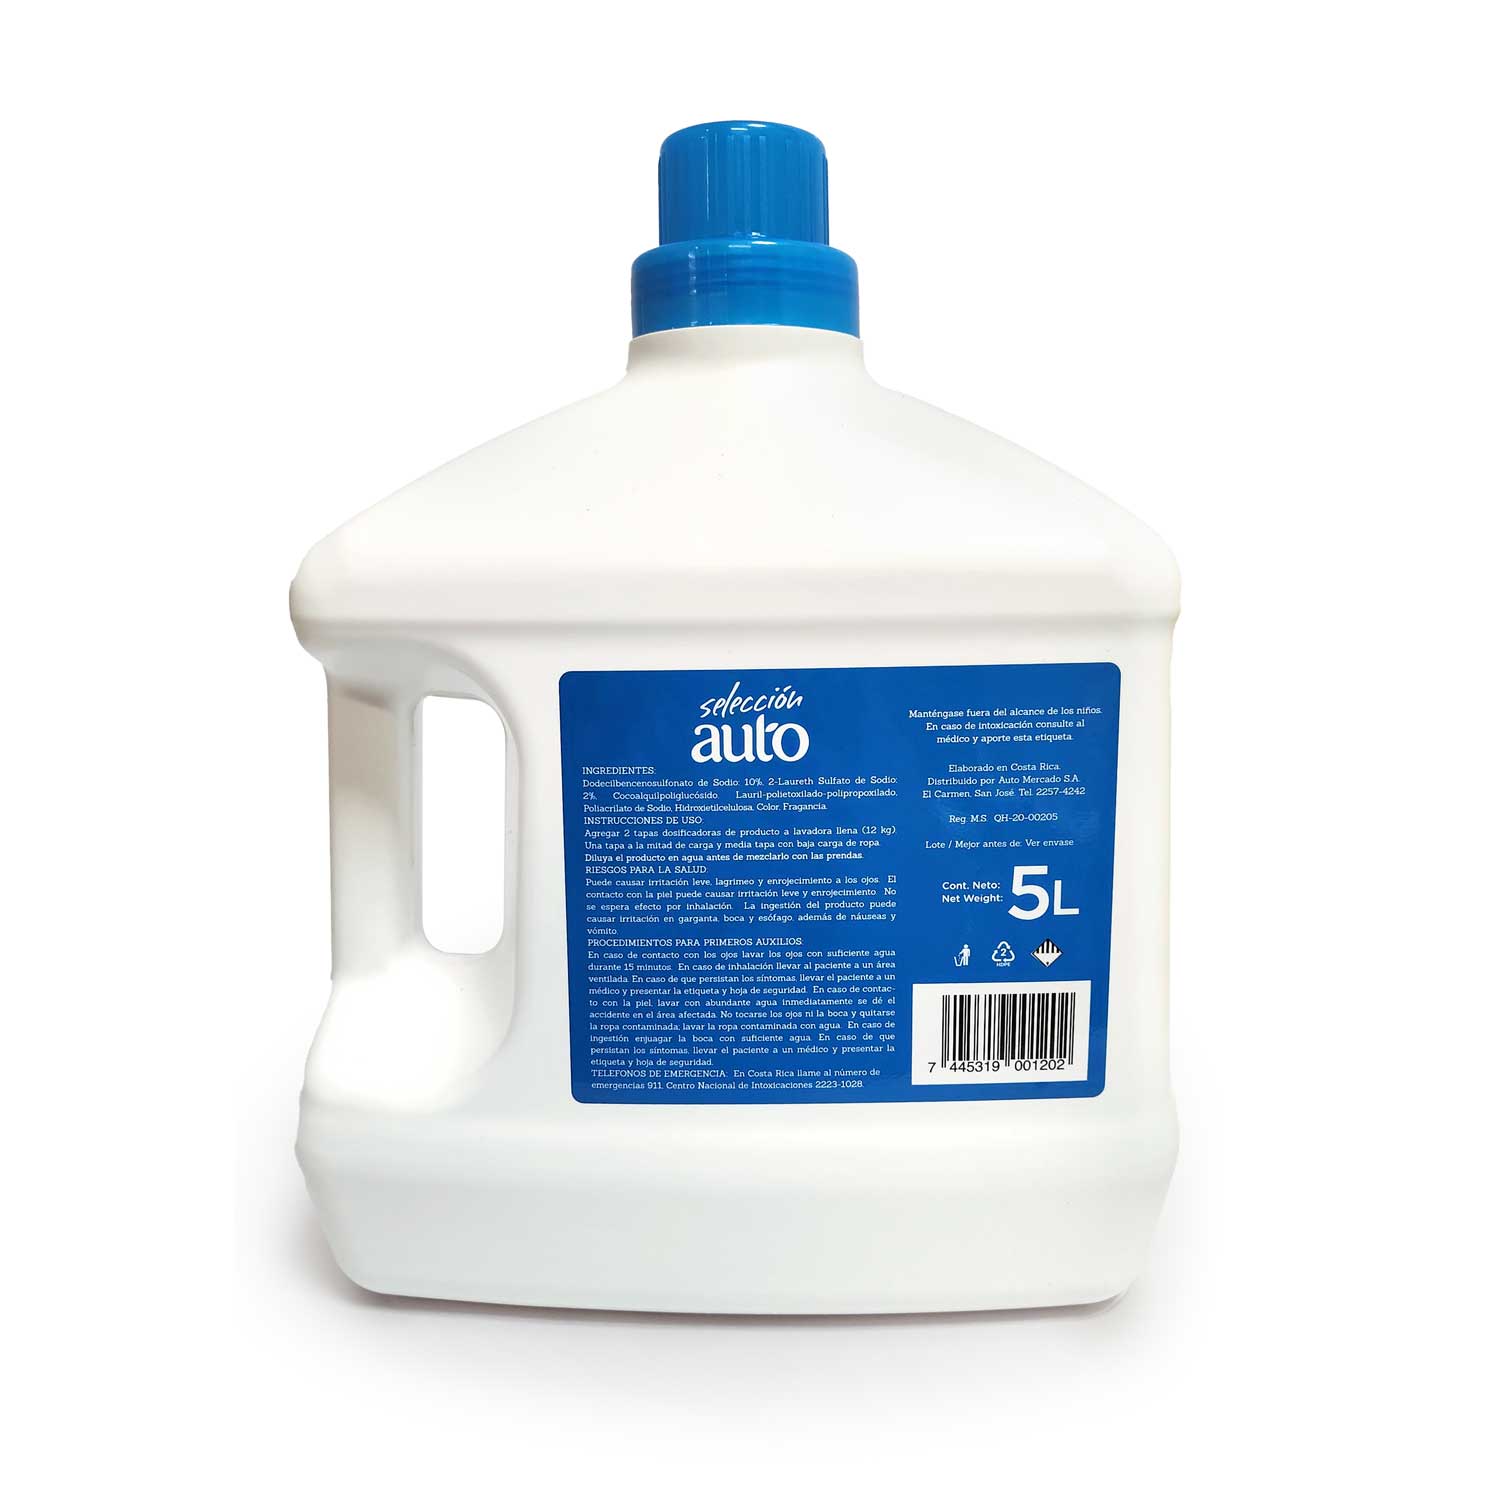 Detergente Liquido Bio Seleccion Auto Envase 5000 Ml